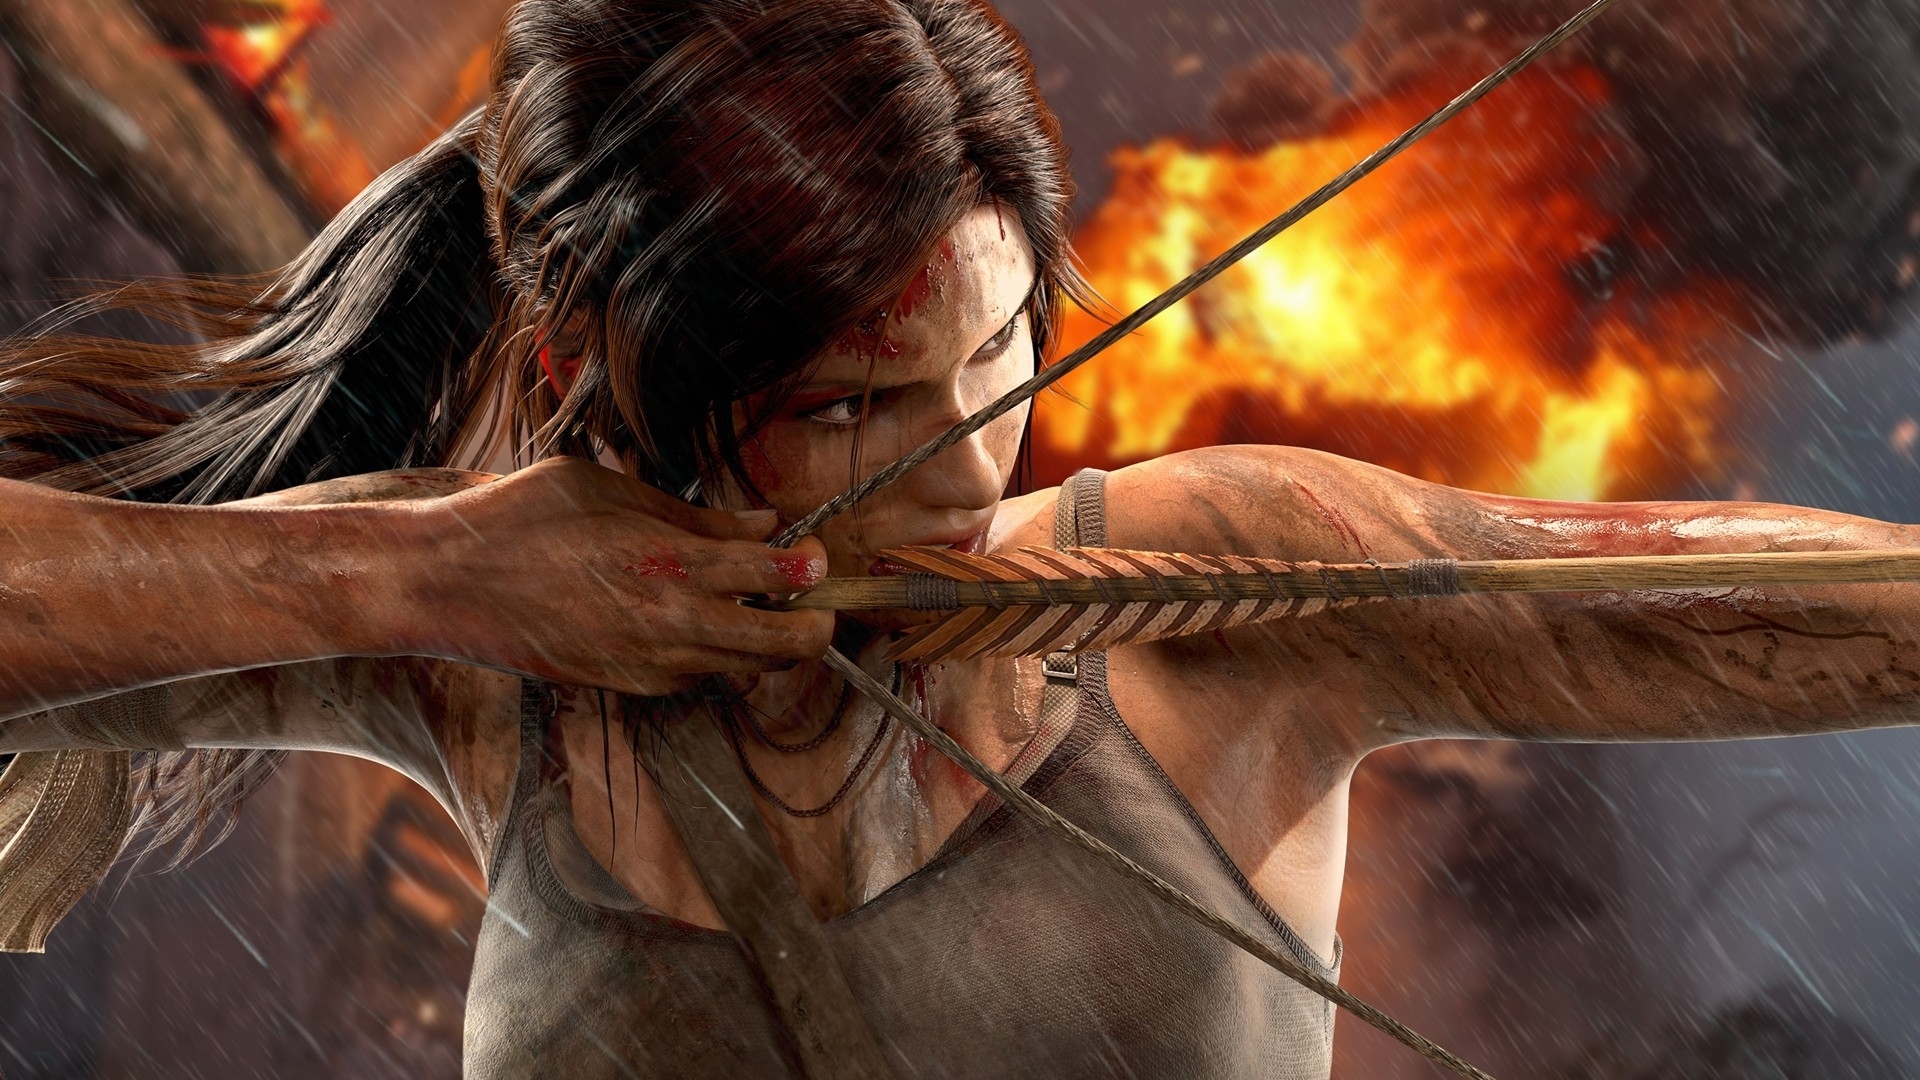 Lara Croft Bow Tomb Raider Wallpaper Best